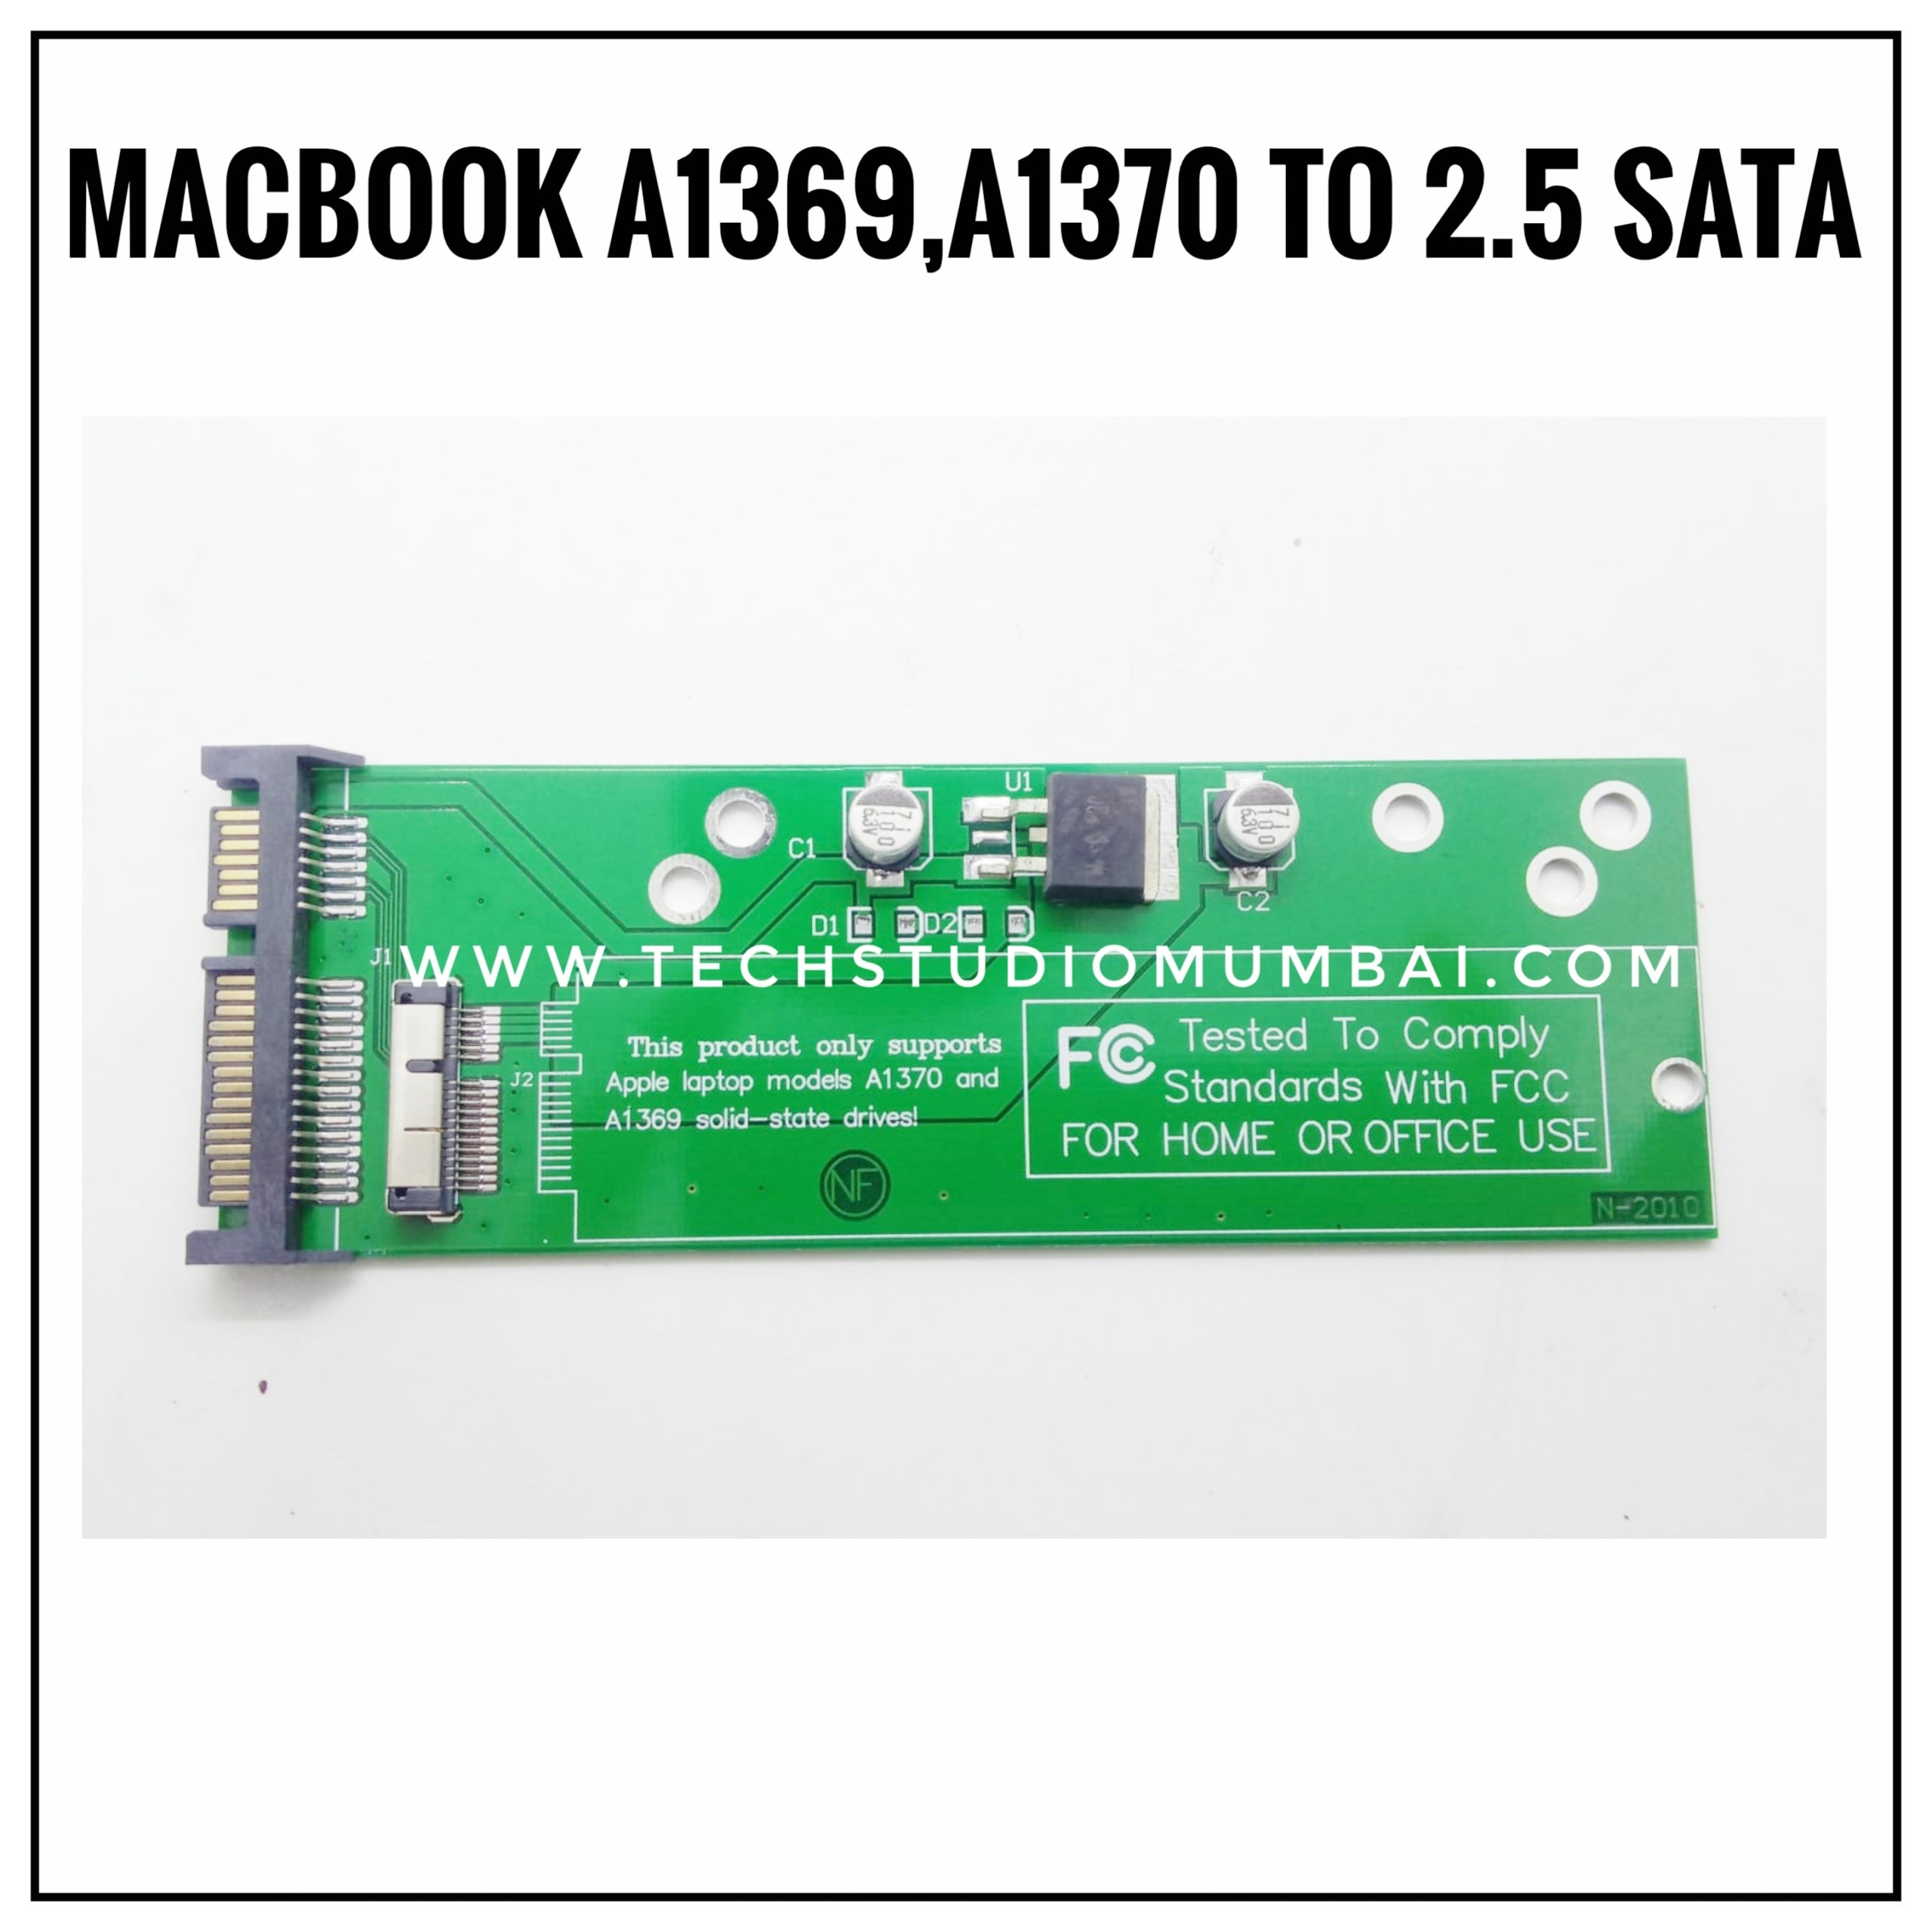 Macbook A1369/A1370 to 2.5 SATA